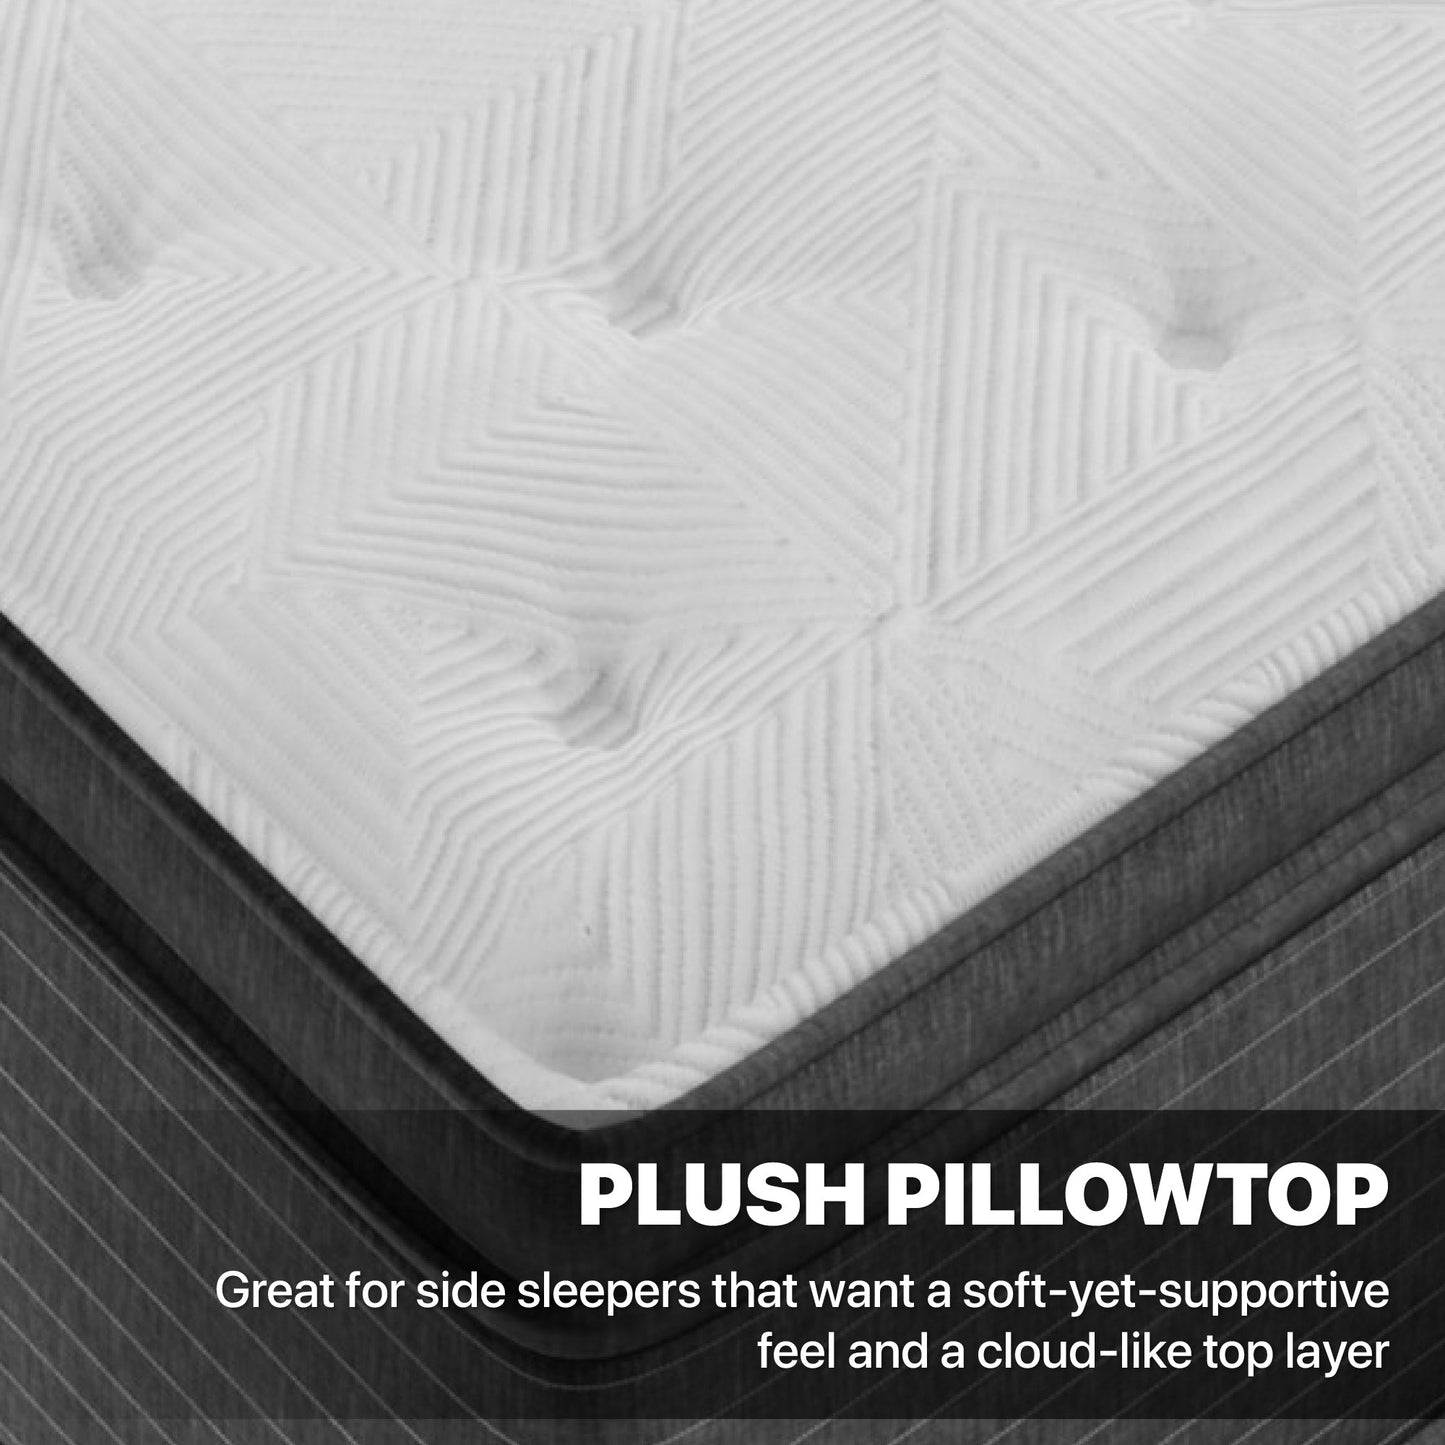 Beautyrest Elements Chesapeake Plush Pillow Top Mattress Plush Pillowtop Feel